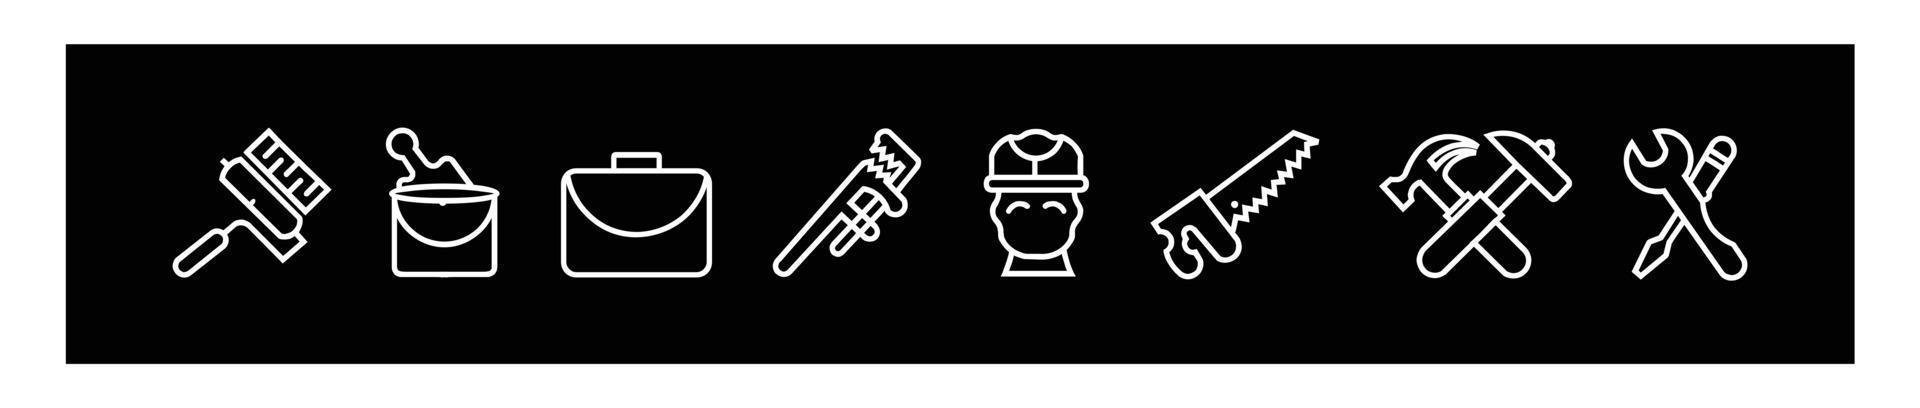 herramientas de construcción flujo de trabajo del sitio de construcción e iconos de diseño de gestión, maquinaria y equipo de construcción esbozan el logotipo de la línea para el diseño sobre fondo negro. vector